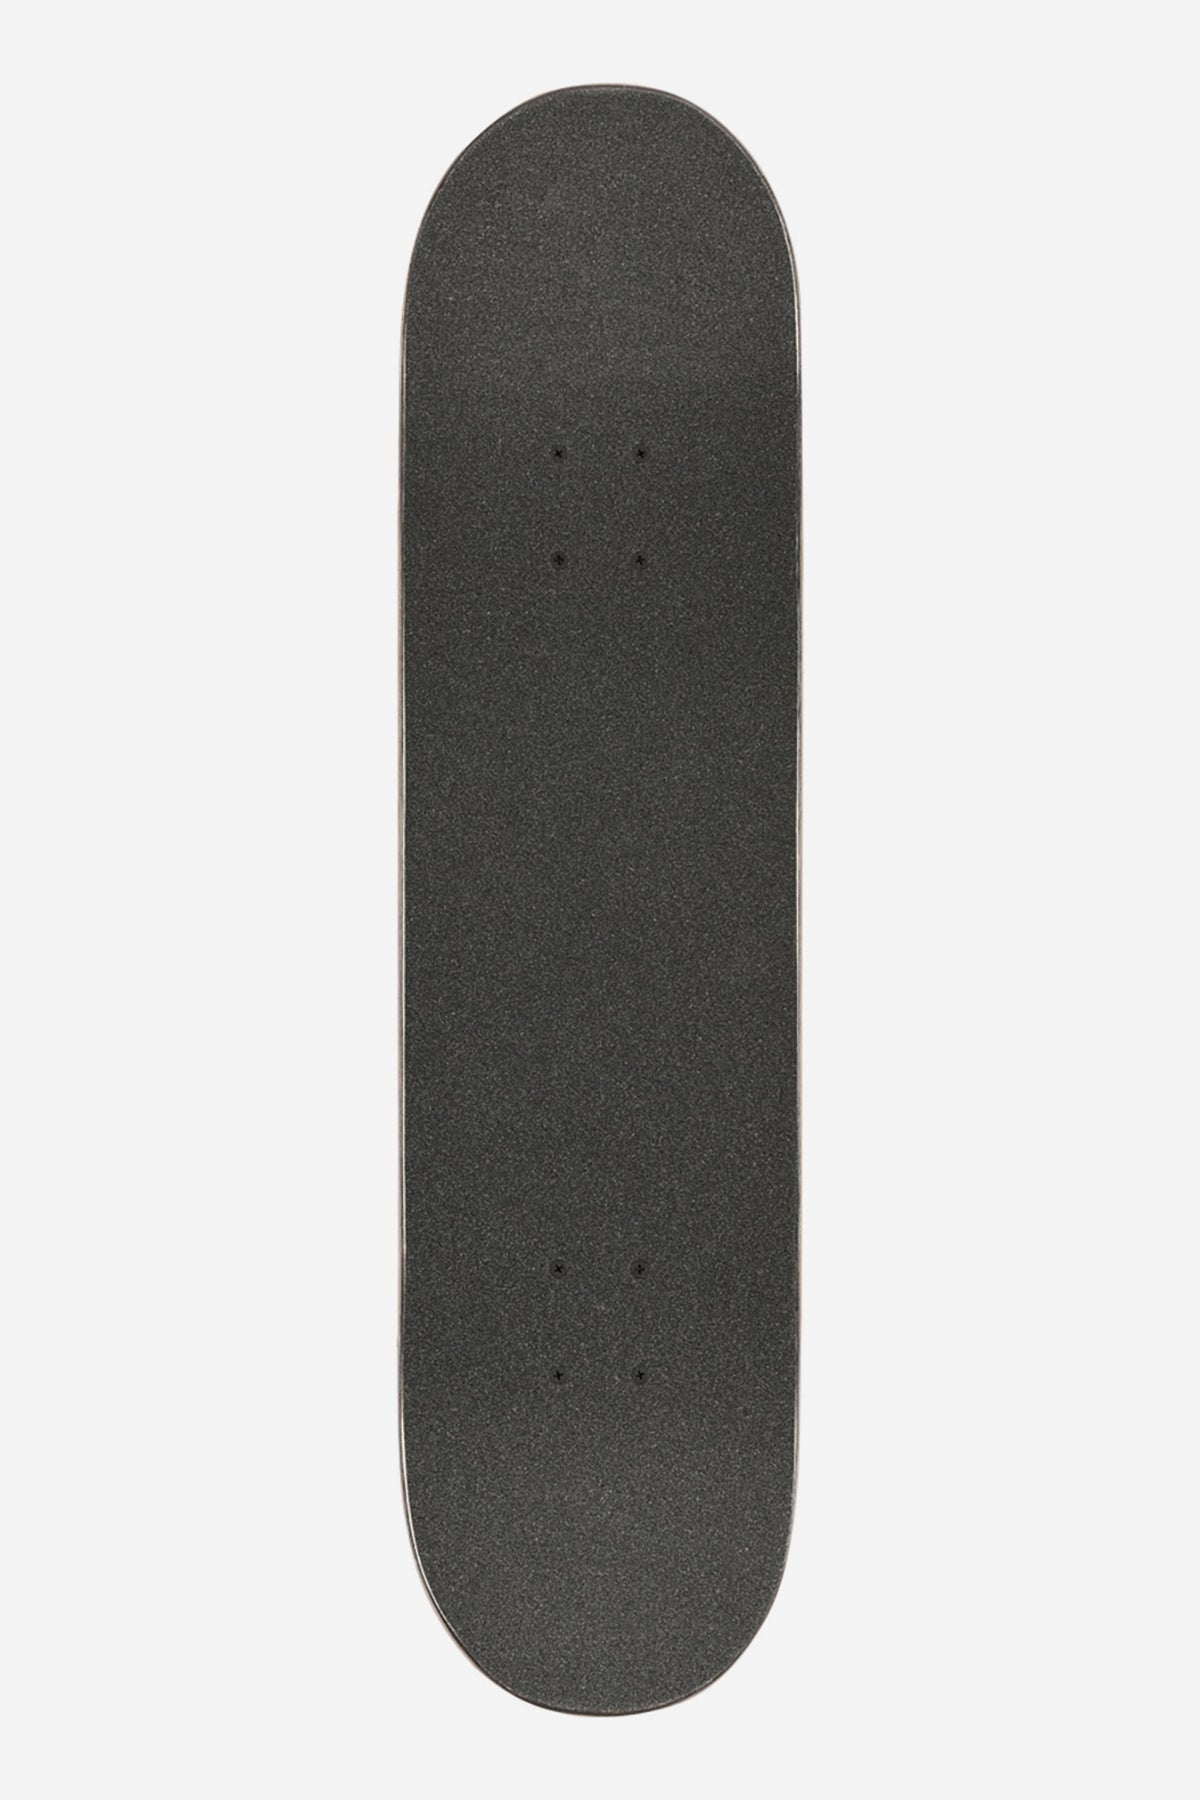 Globe - Goodstock - Navy - 7.875" Completo Skateboard